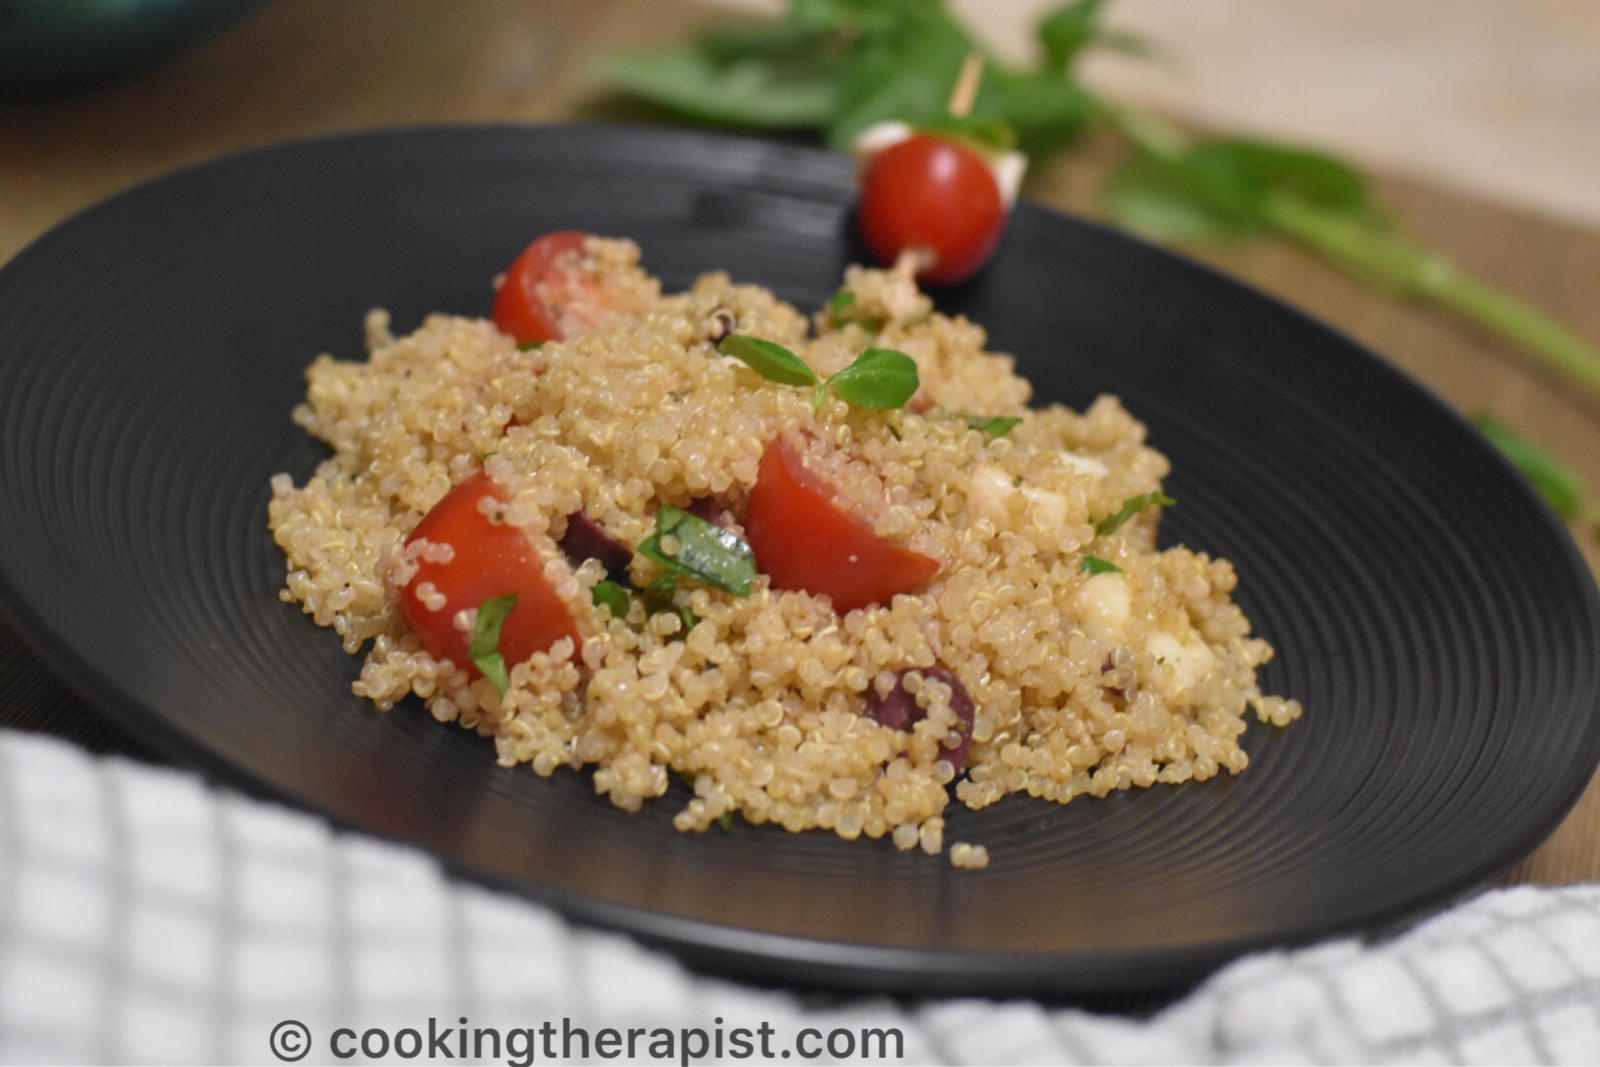 Quinoa caprese salad / Italian style quinoa bowl